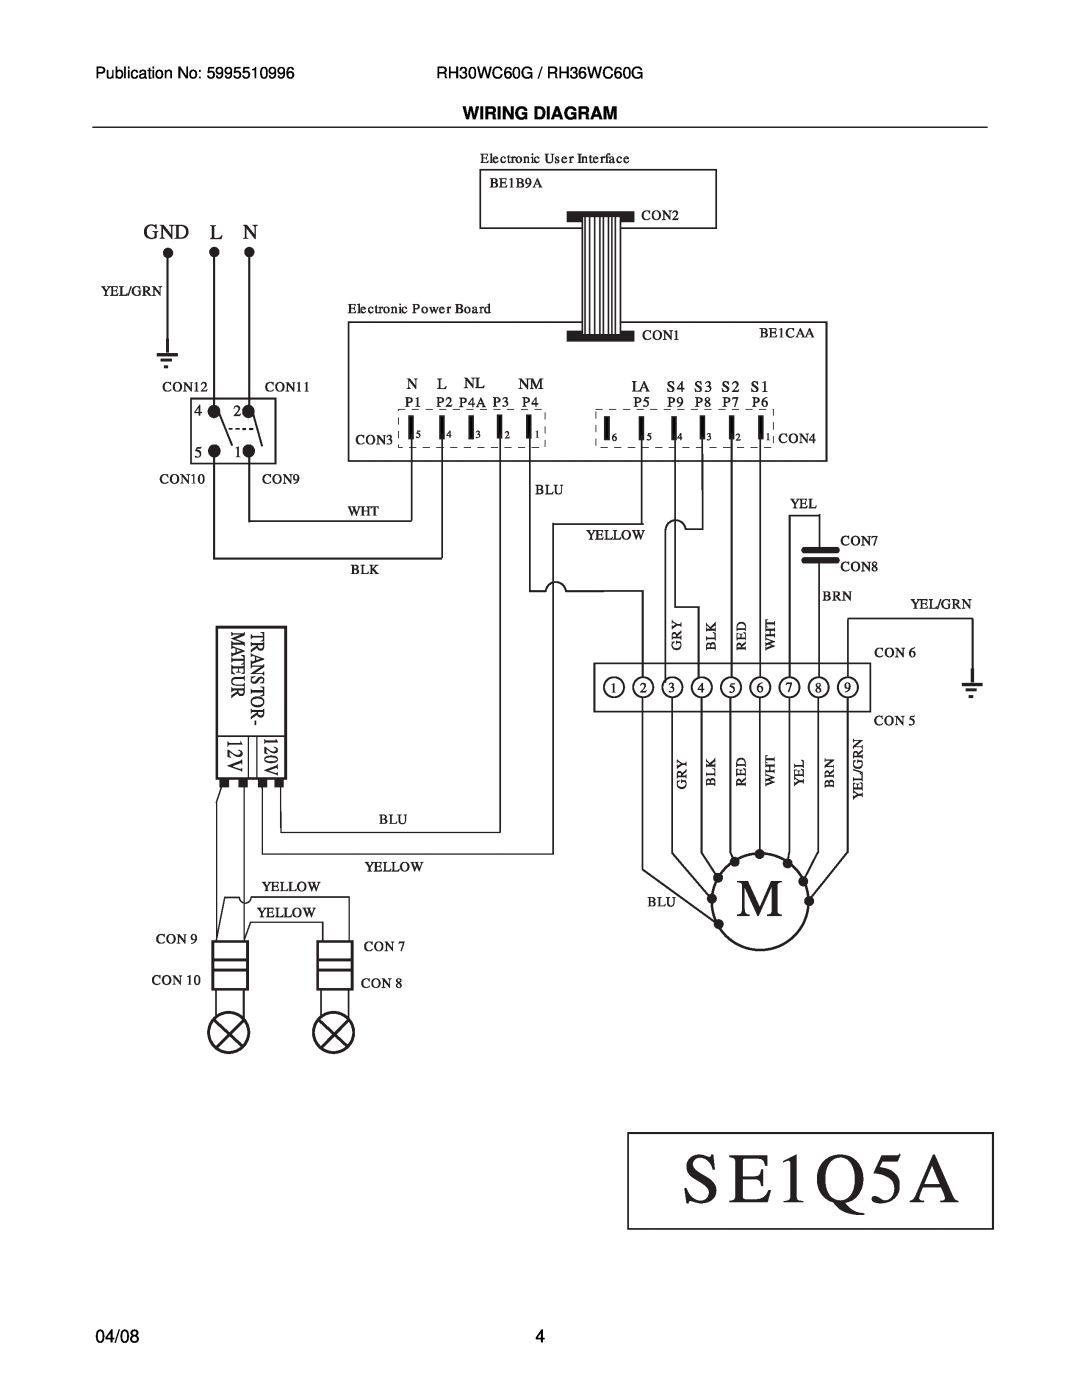 Electrolux RH36WC60GSA, RH30WC60GSA installation instructions Wiring Diagram, 04/08, RH30WC60G / RH36WC60G 